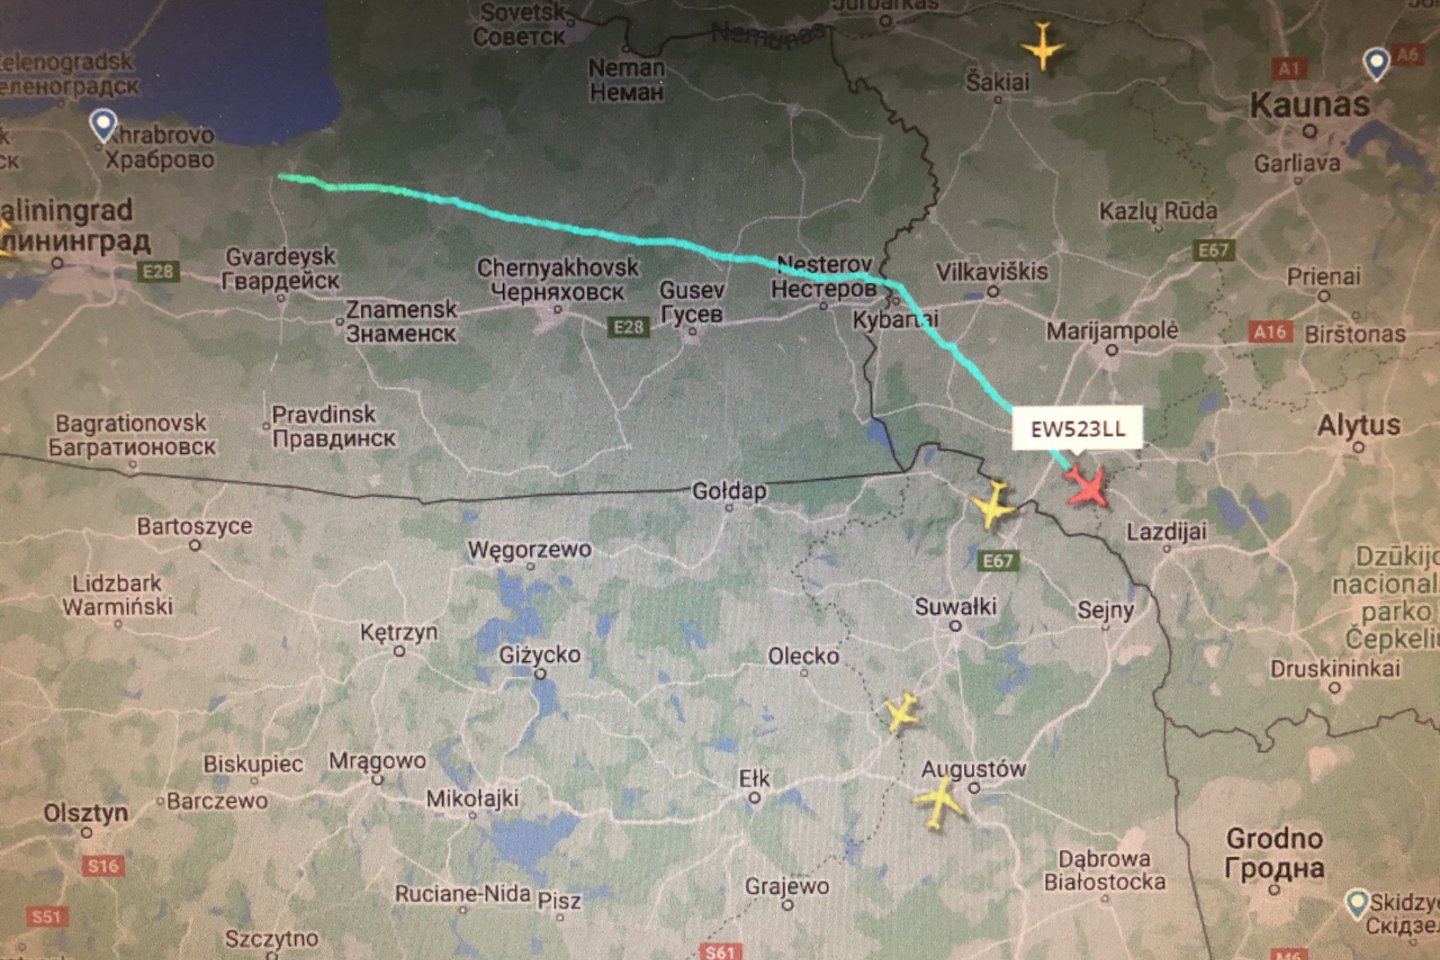  Iš Kaliningrado srities atskridęs lėktuvas kirto pietinę Lietuvos dalį. <br> Nuotr. iš LR archyvo.